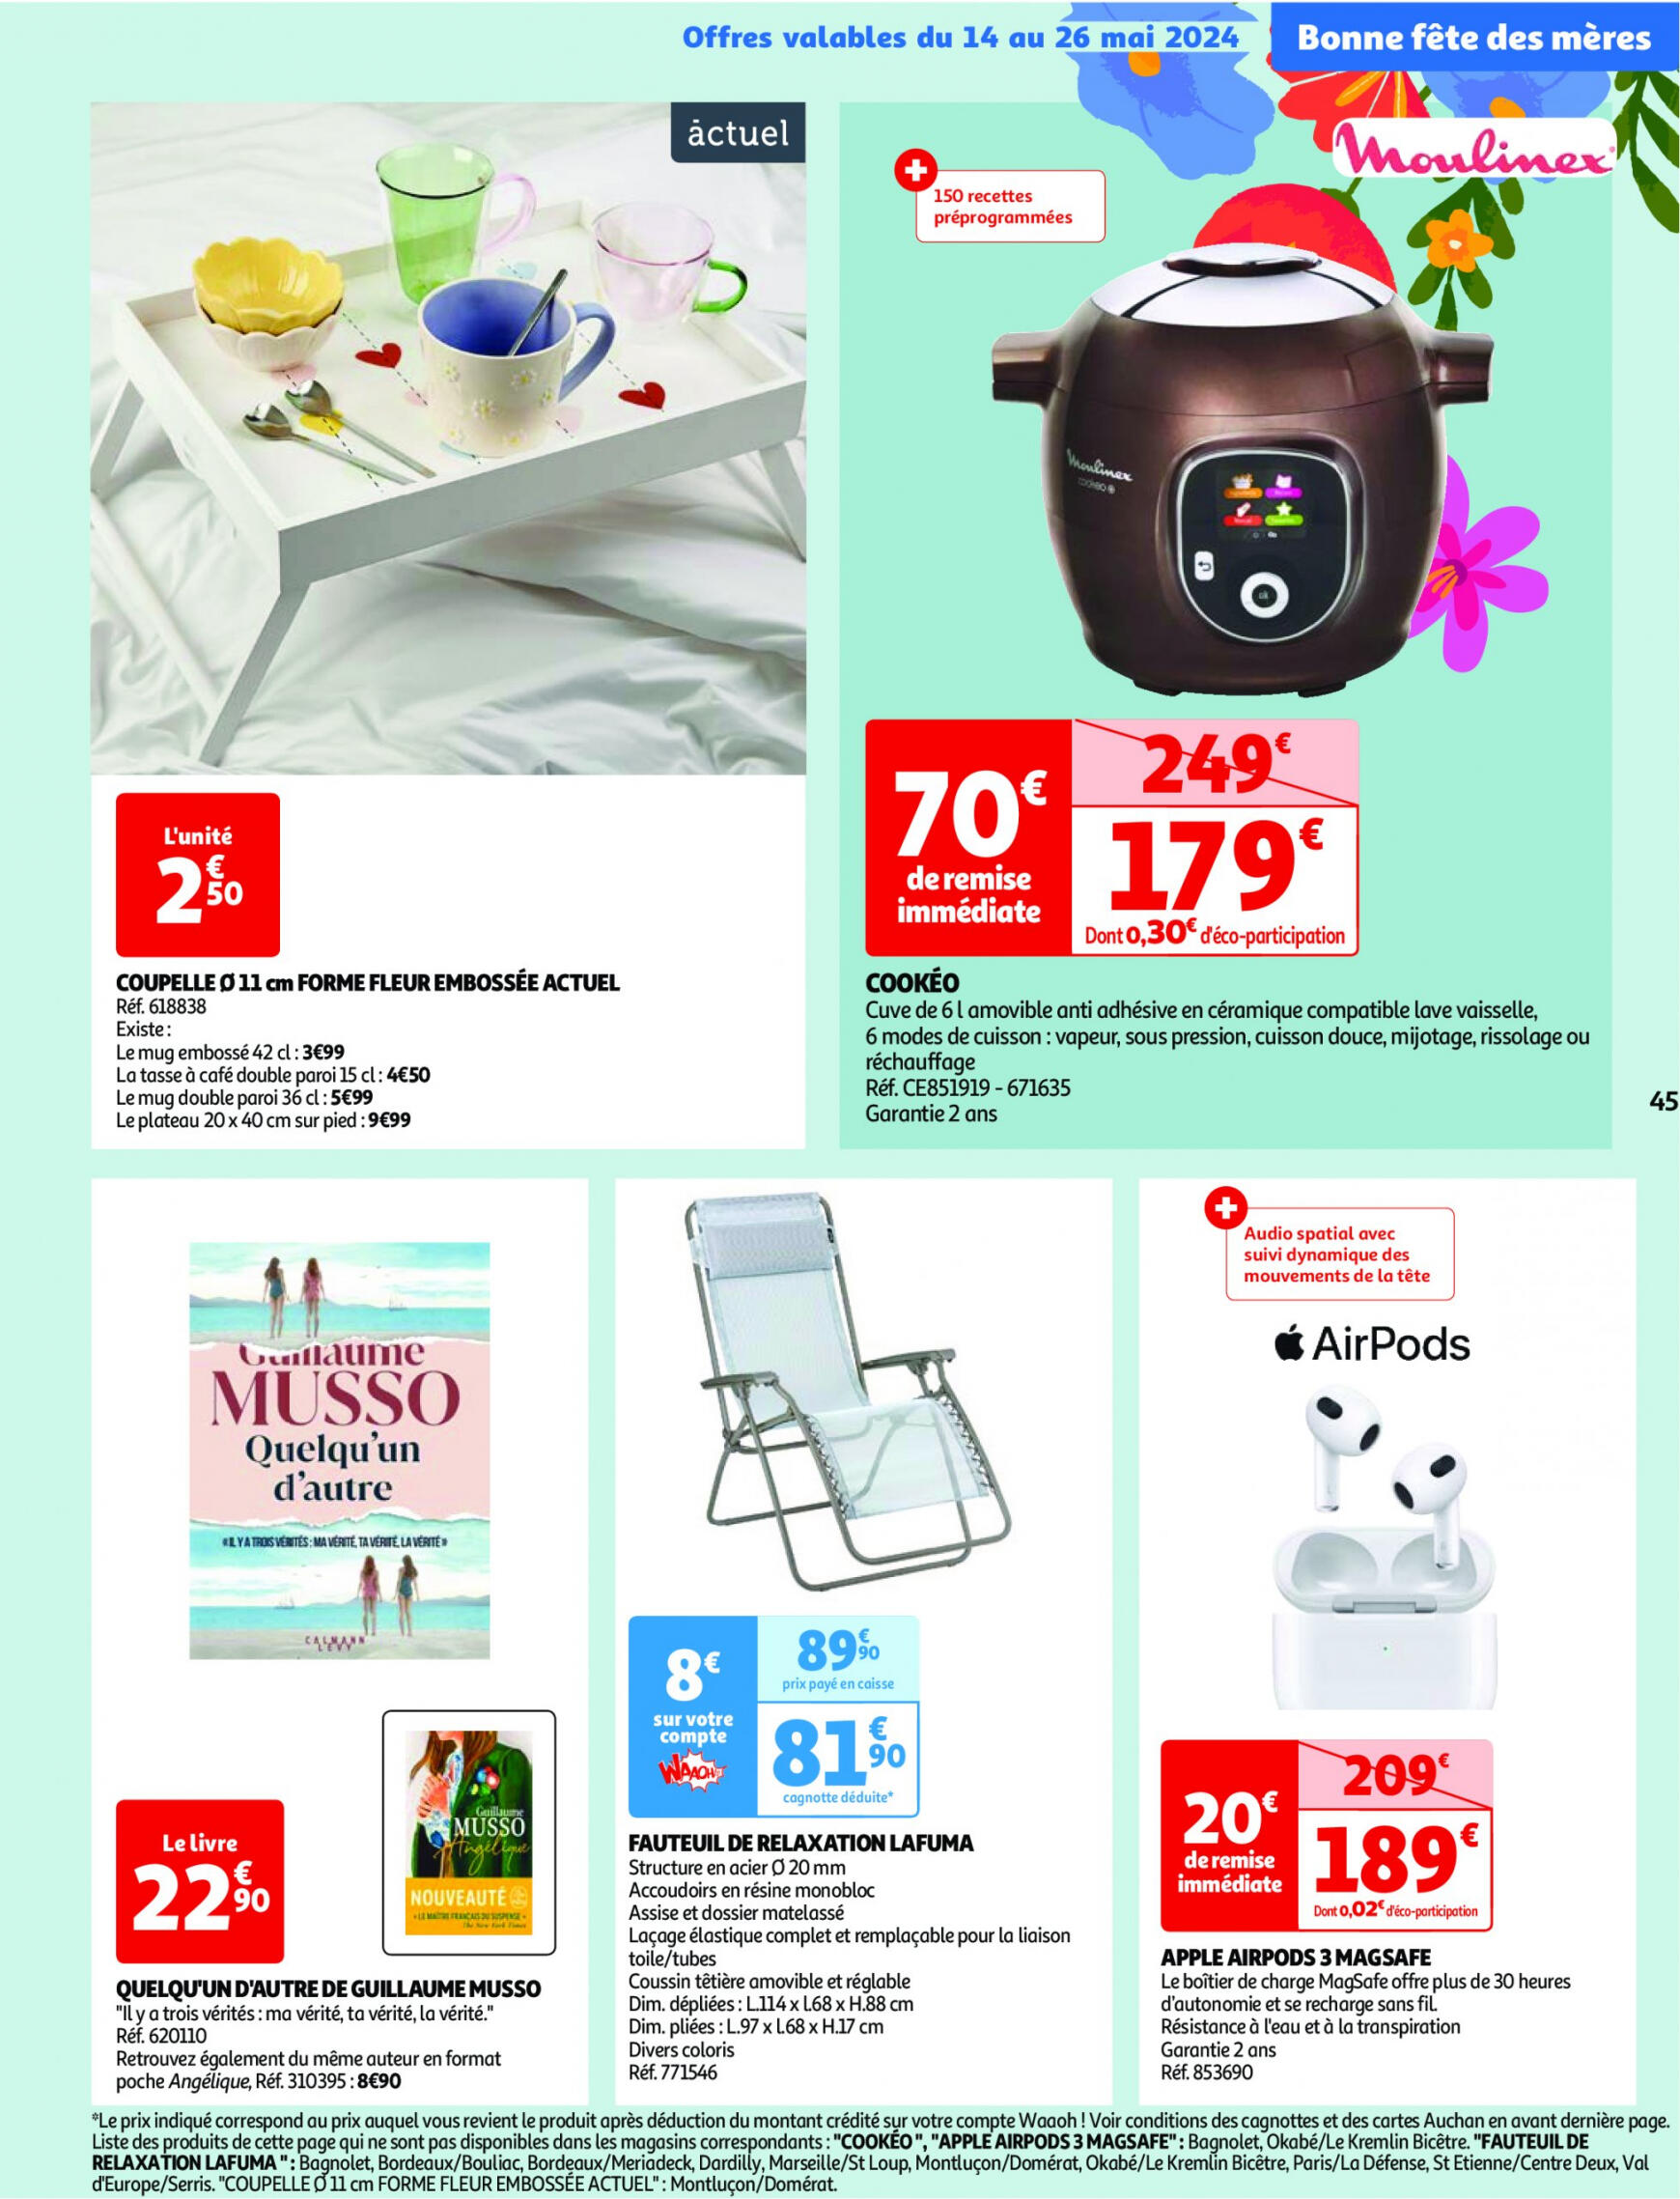 auchan - Prospectus Auchan actuel 14.05. - 21.05. - page: 45